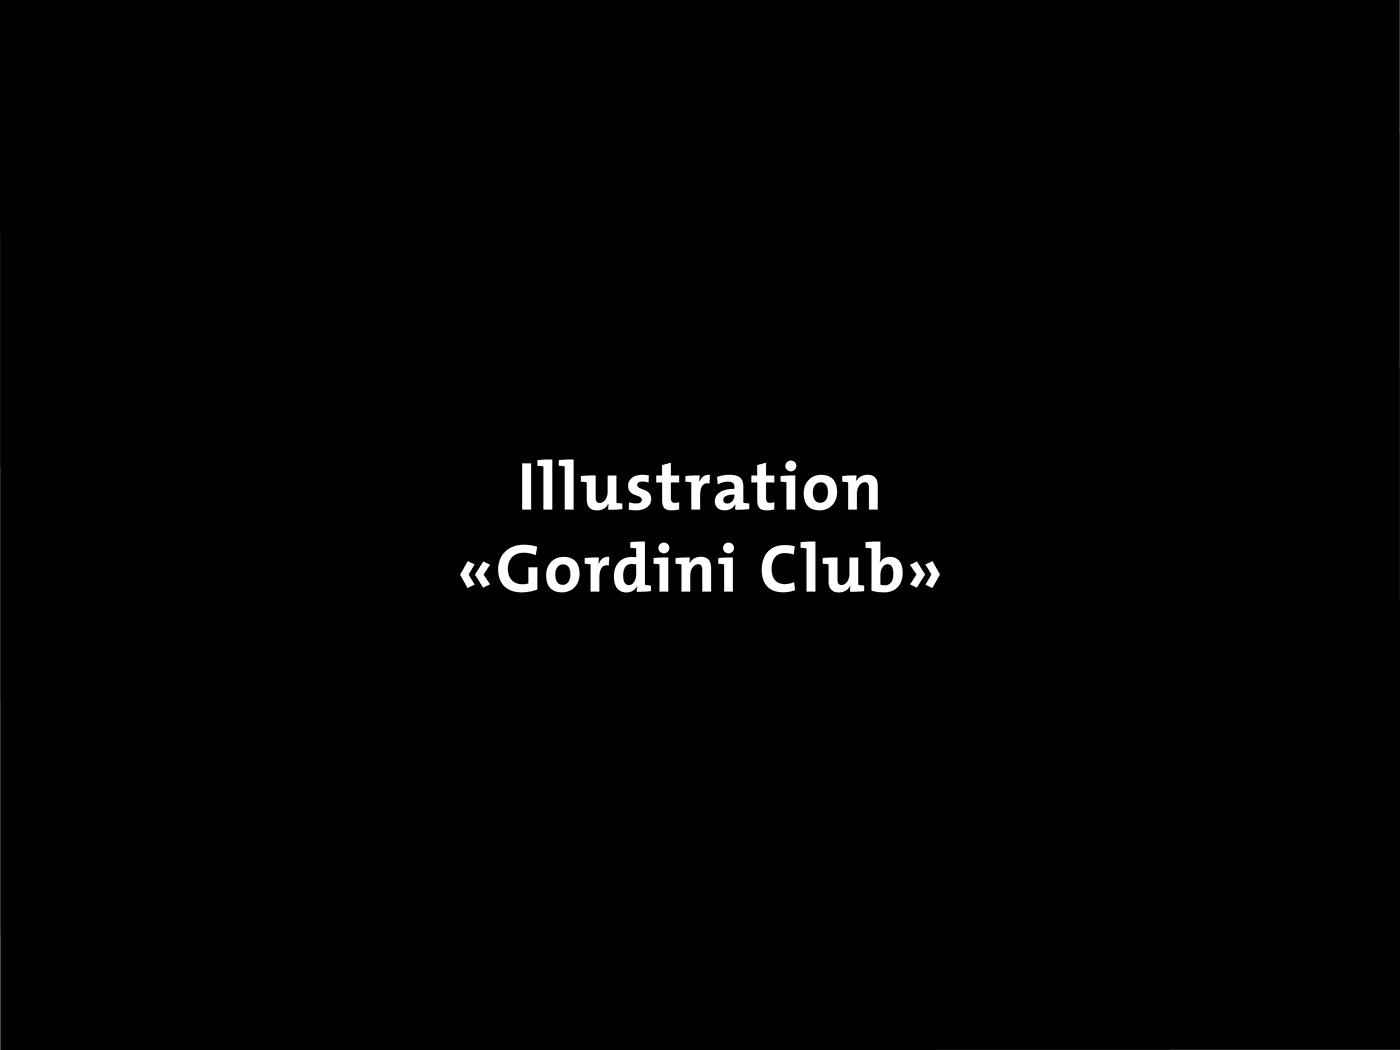 Gordini-Club logodesign ILLUSTRATION  Wort-/Bildmarke